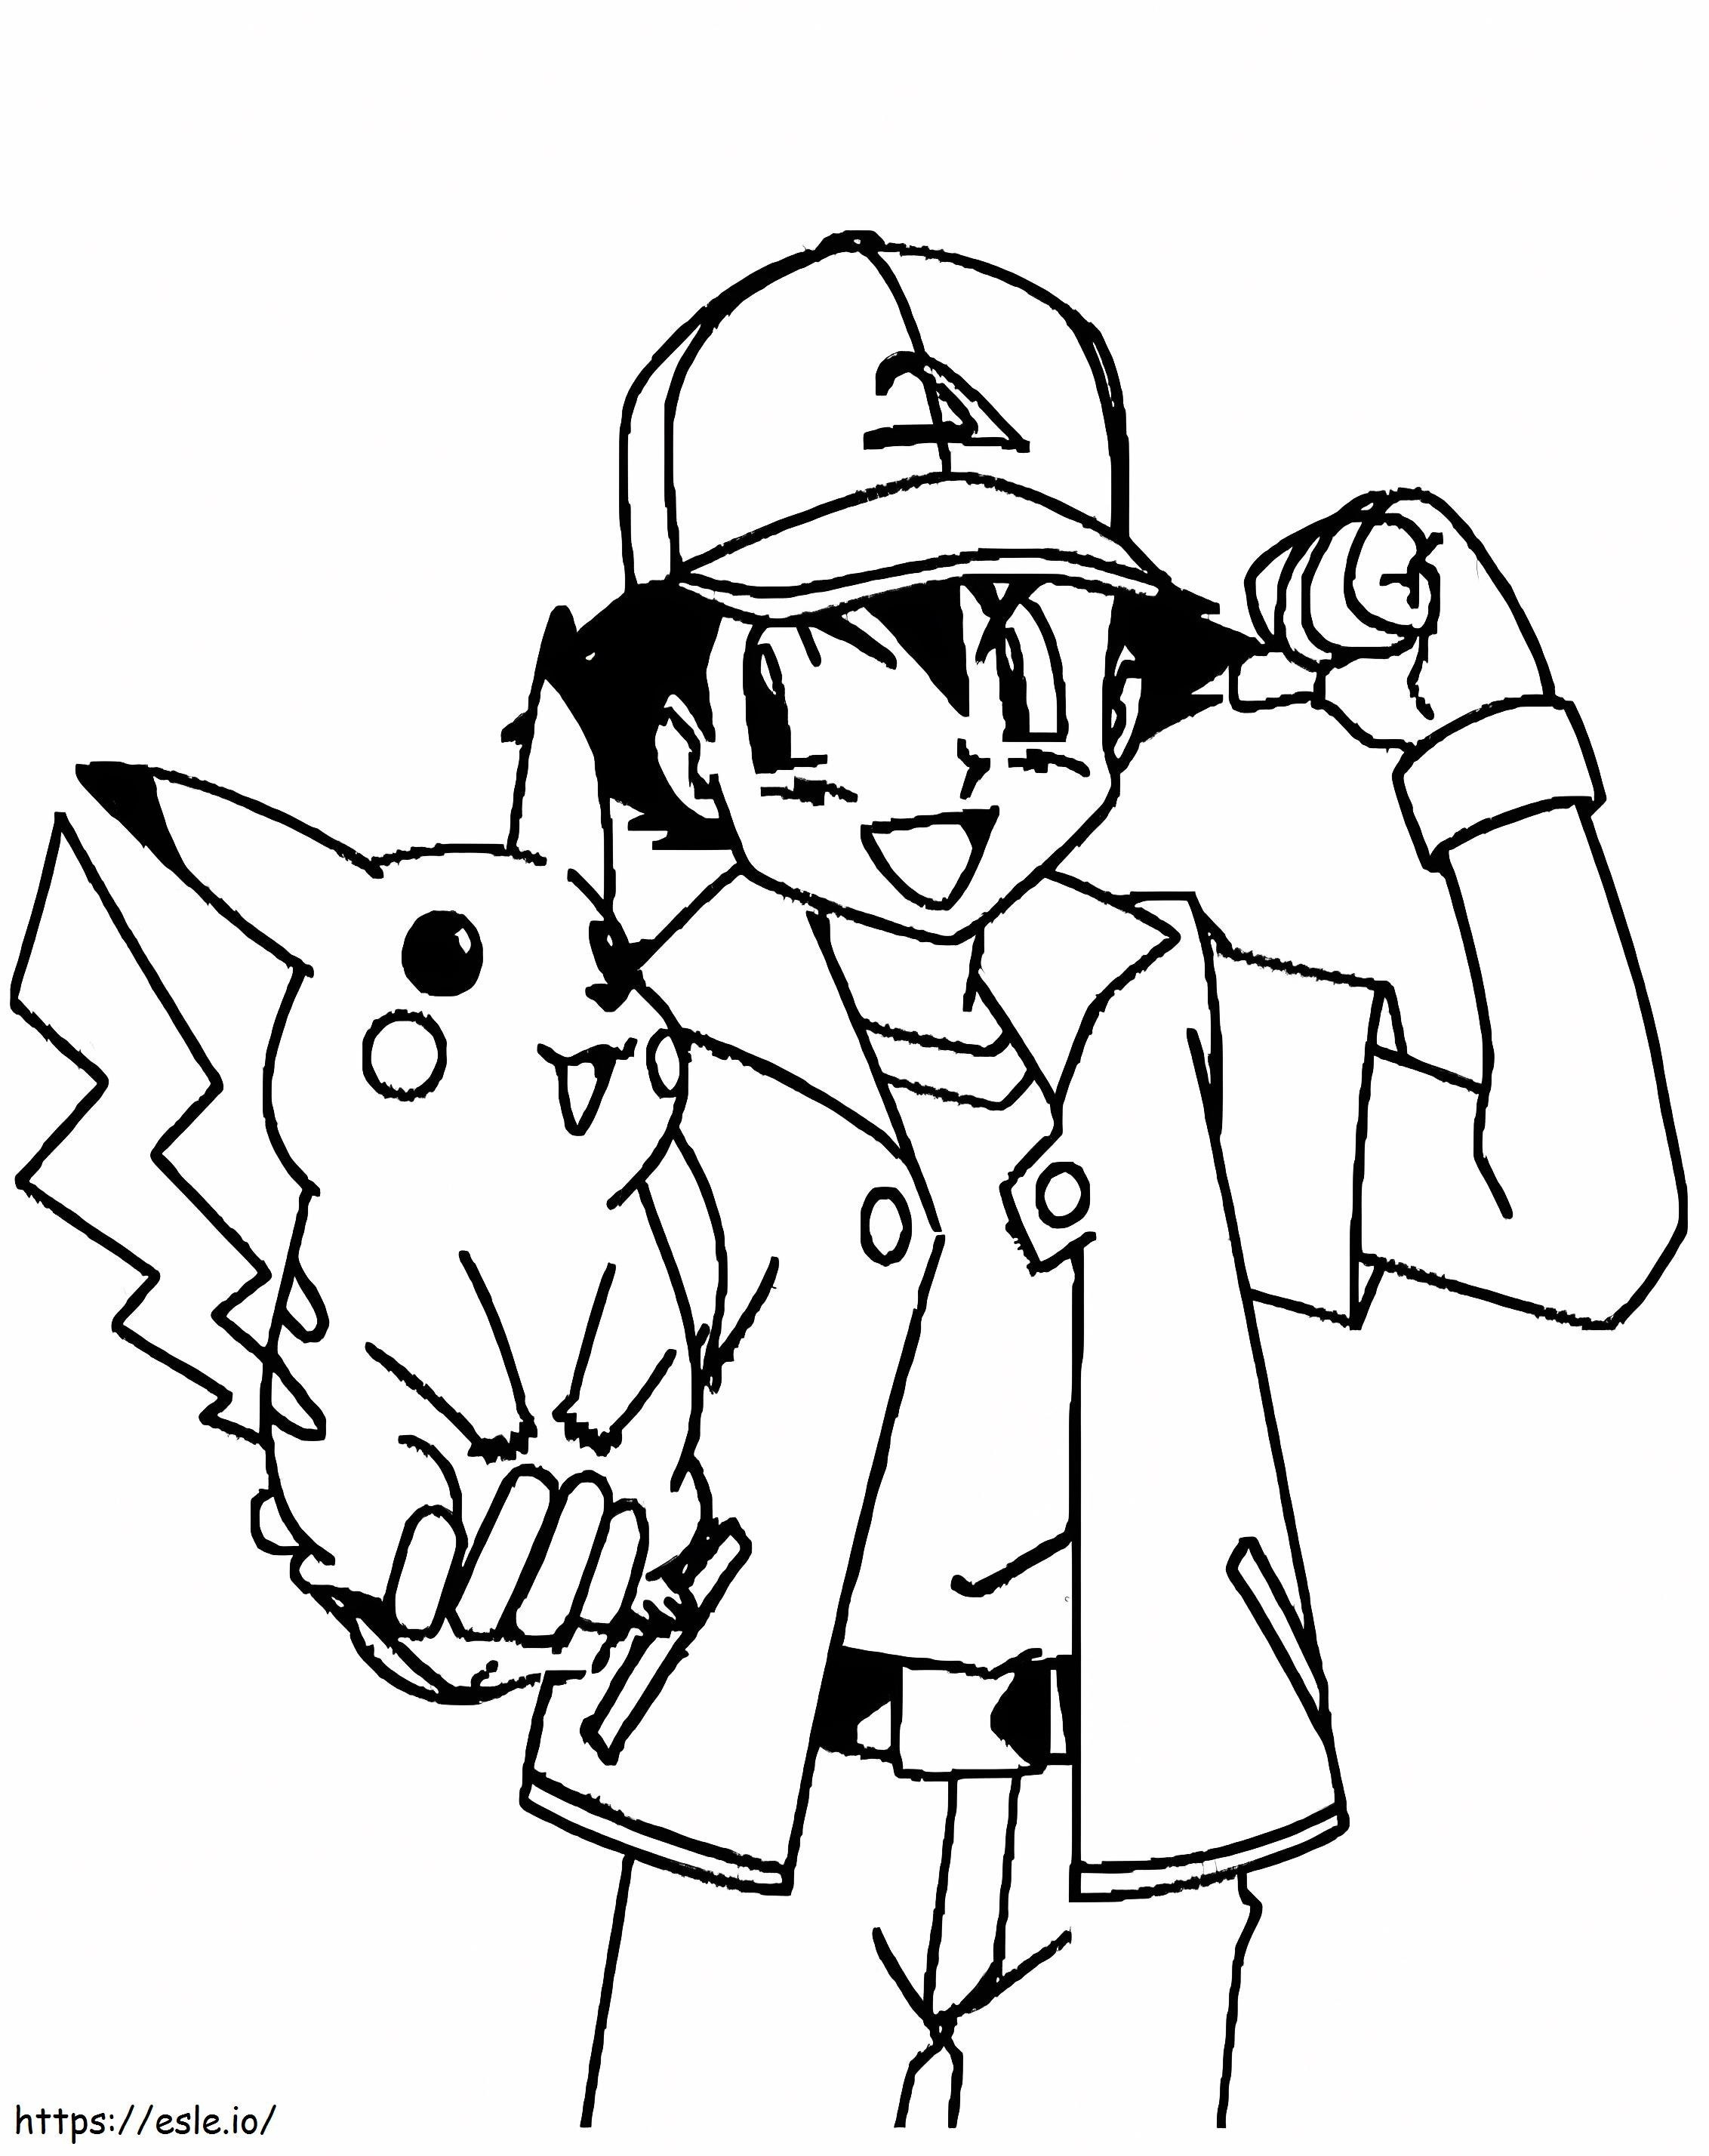 Ash Ketchum con in braccio Pikachu da colorare